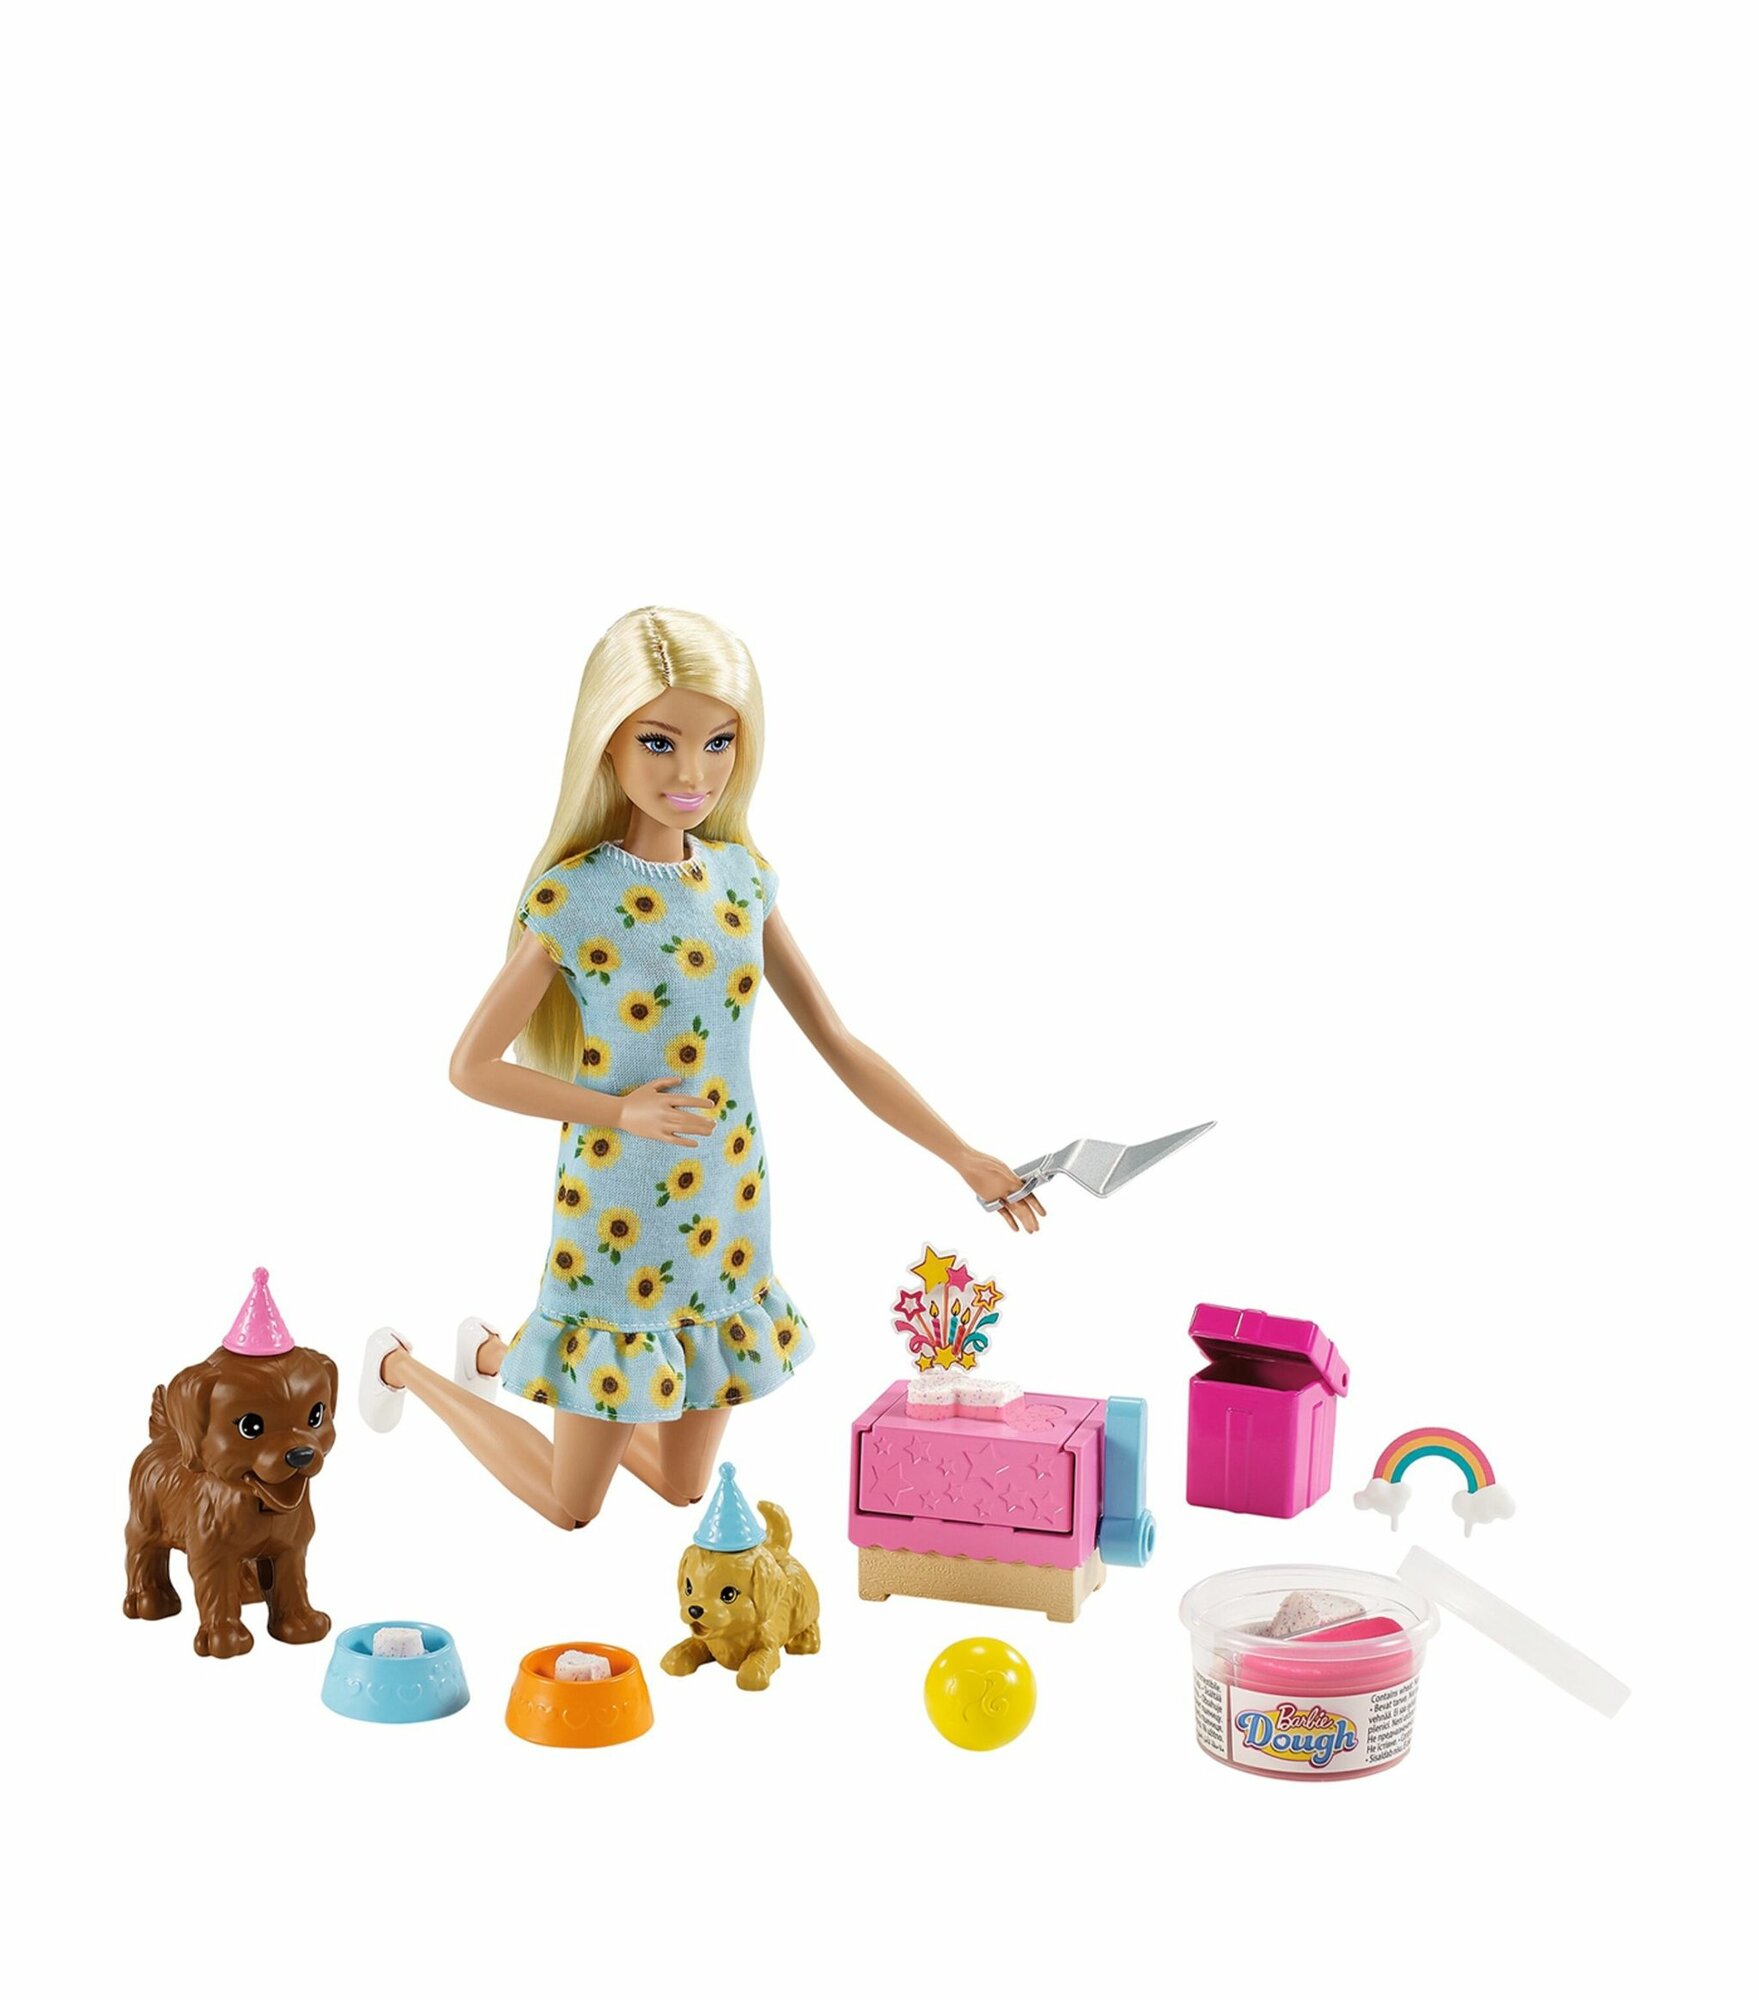 Barbie Игровой набор "Barbie и щенки" кукла Барби